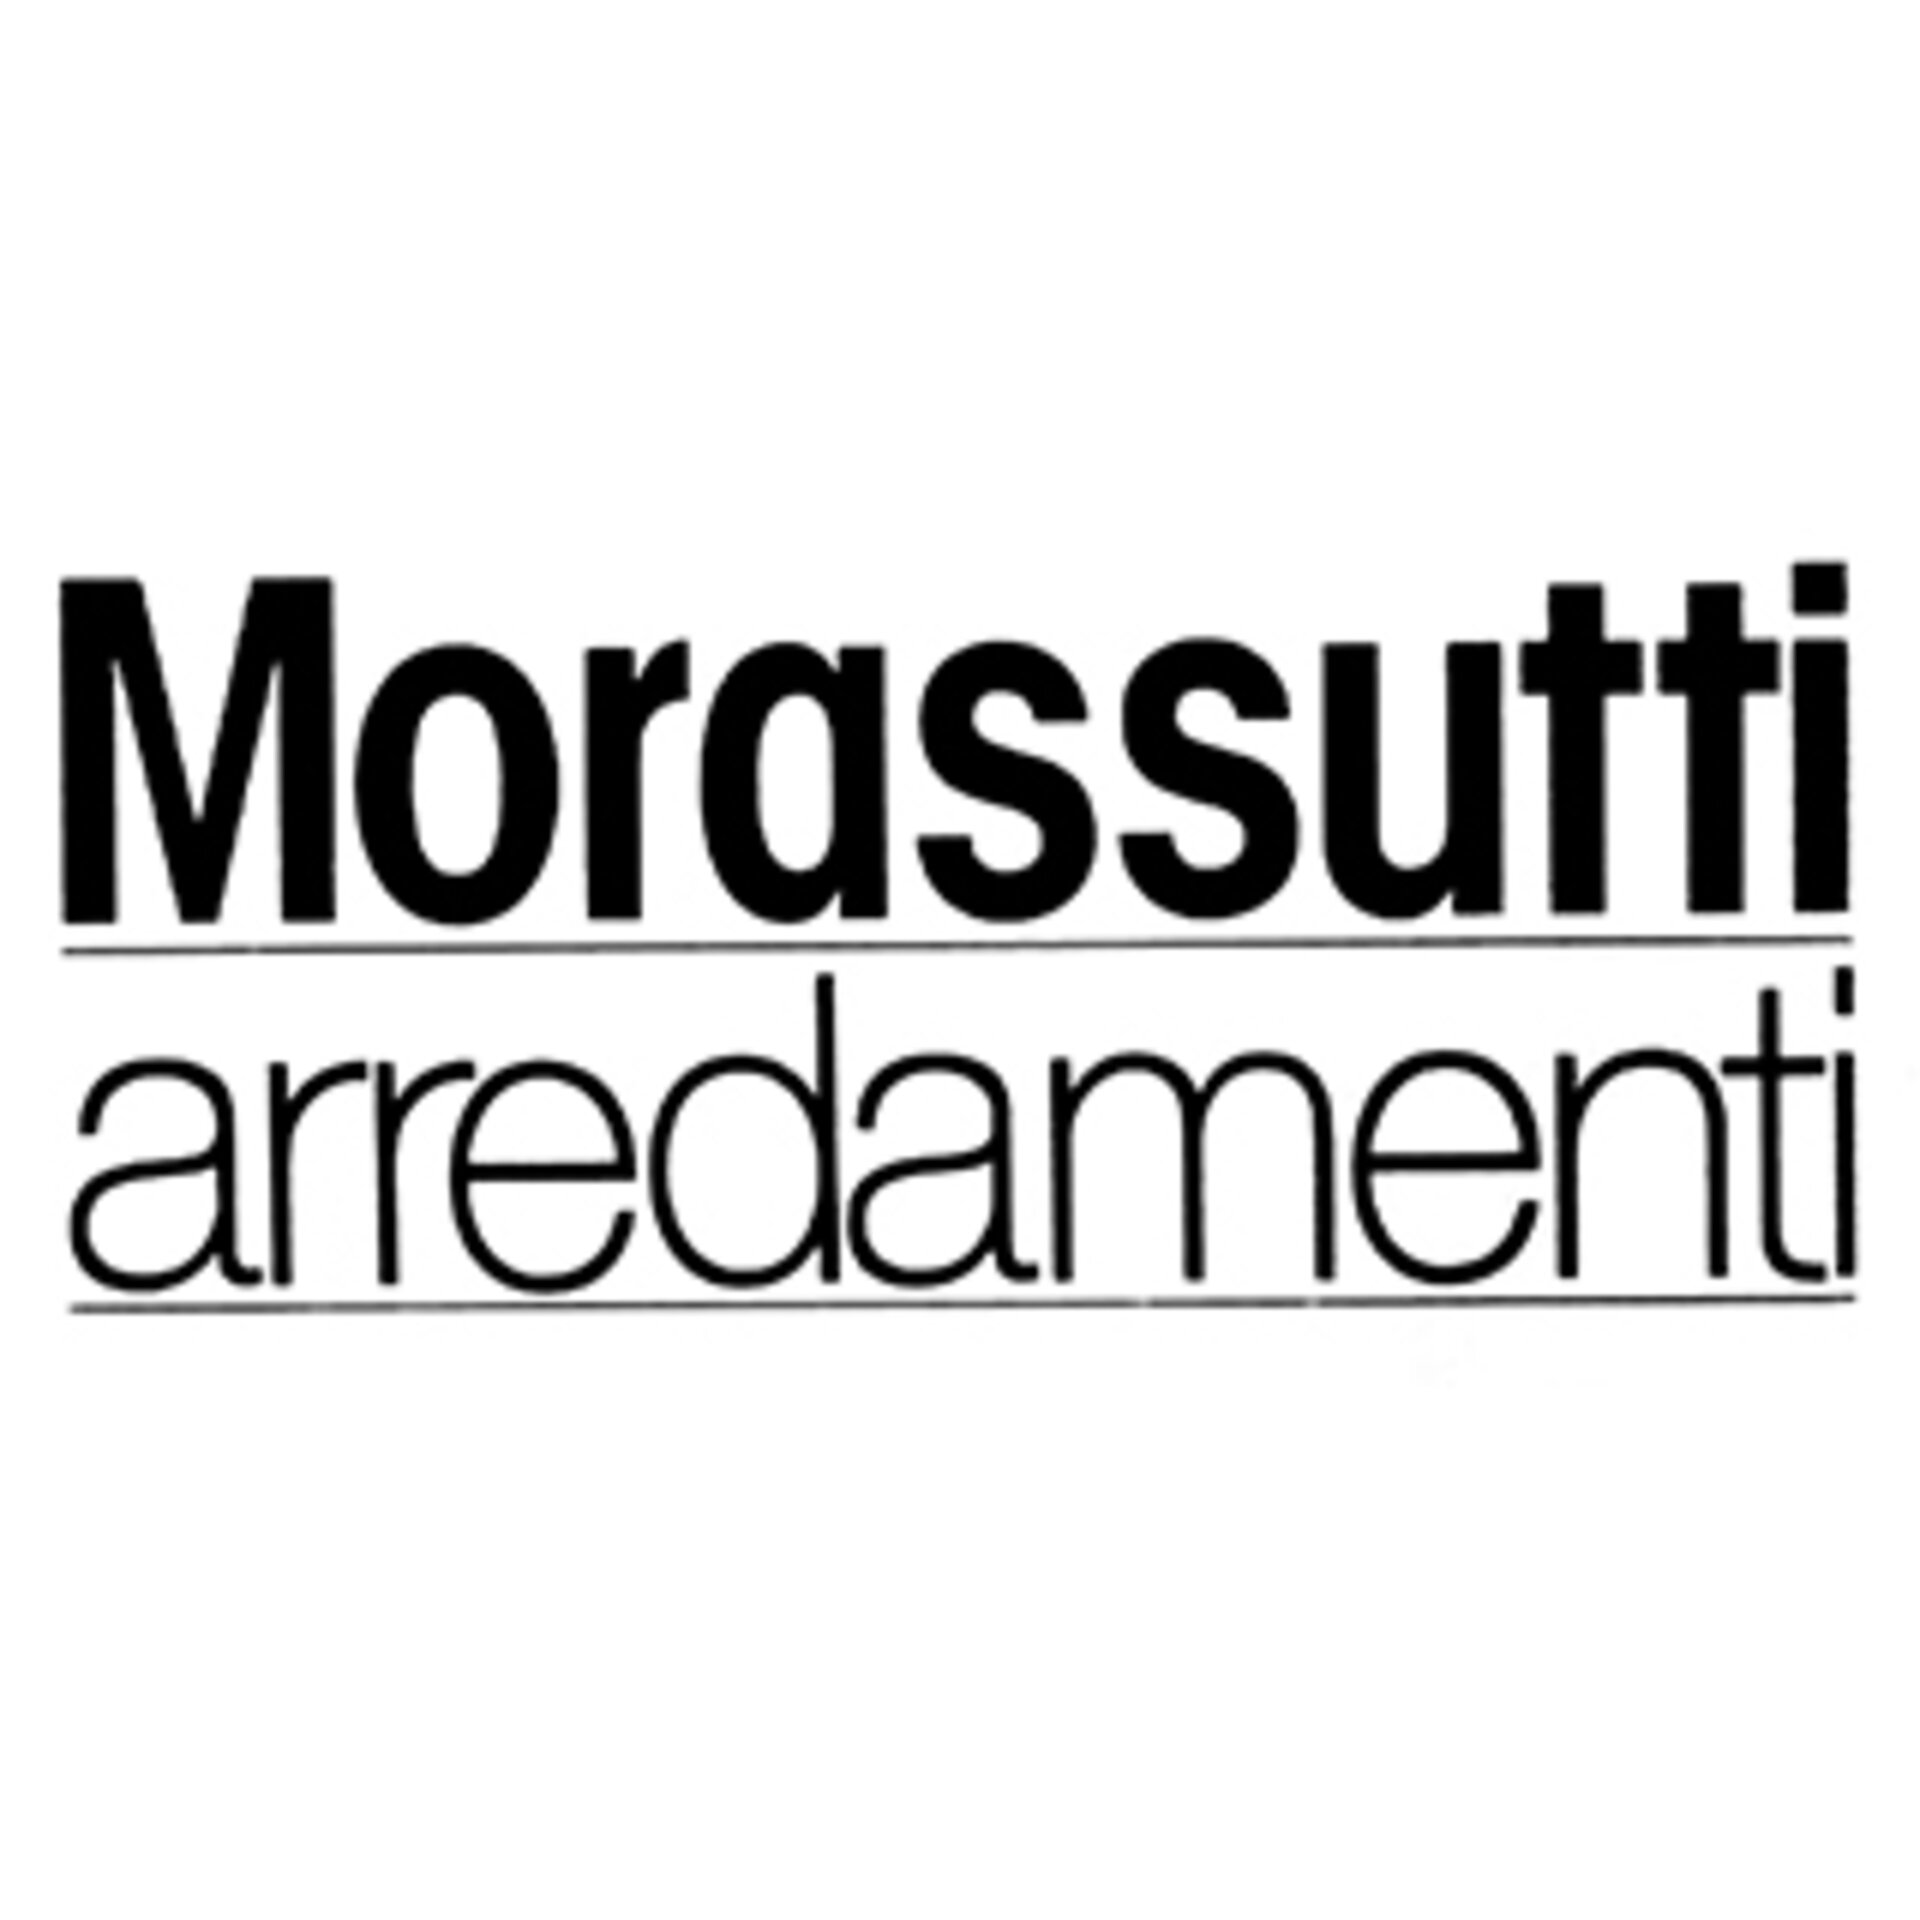 Morassutti-arredamenti Logo